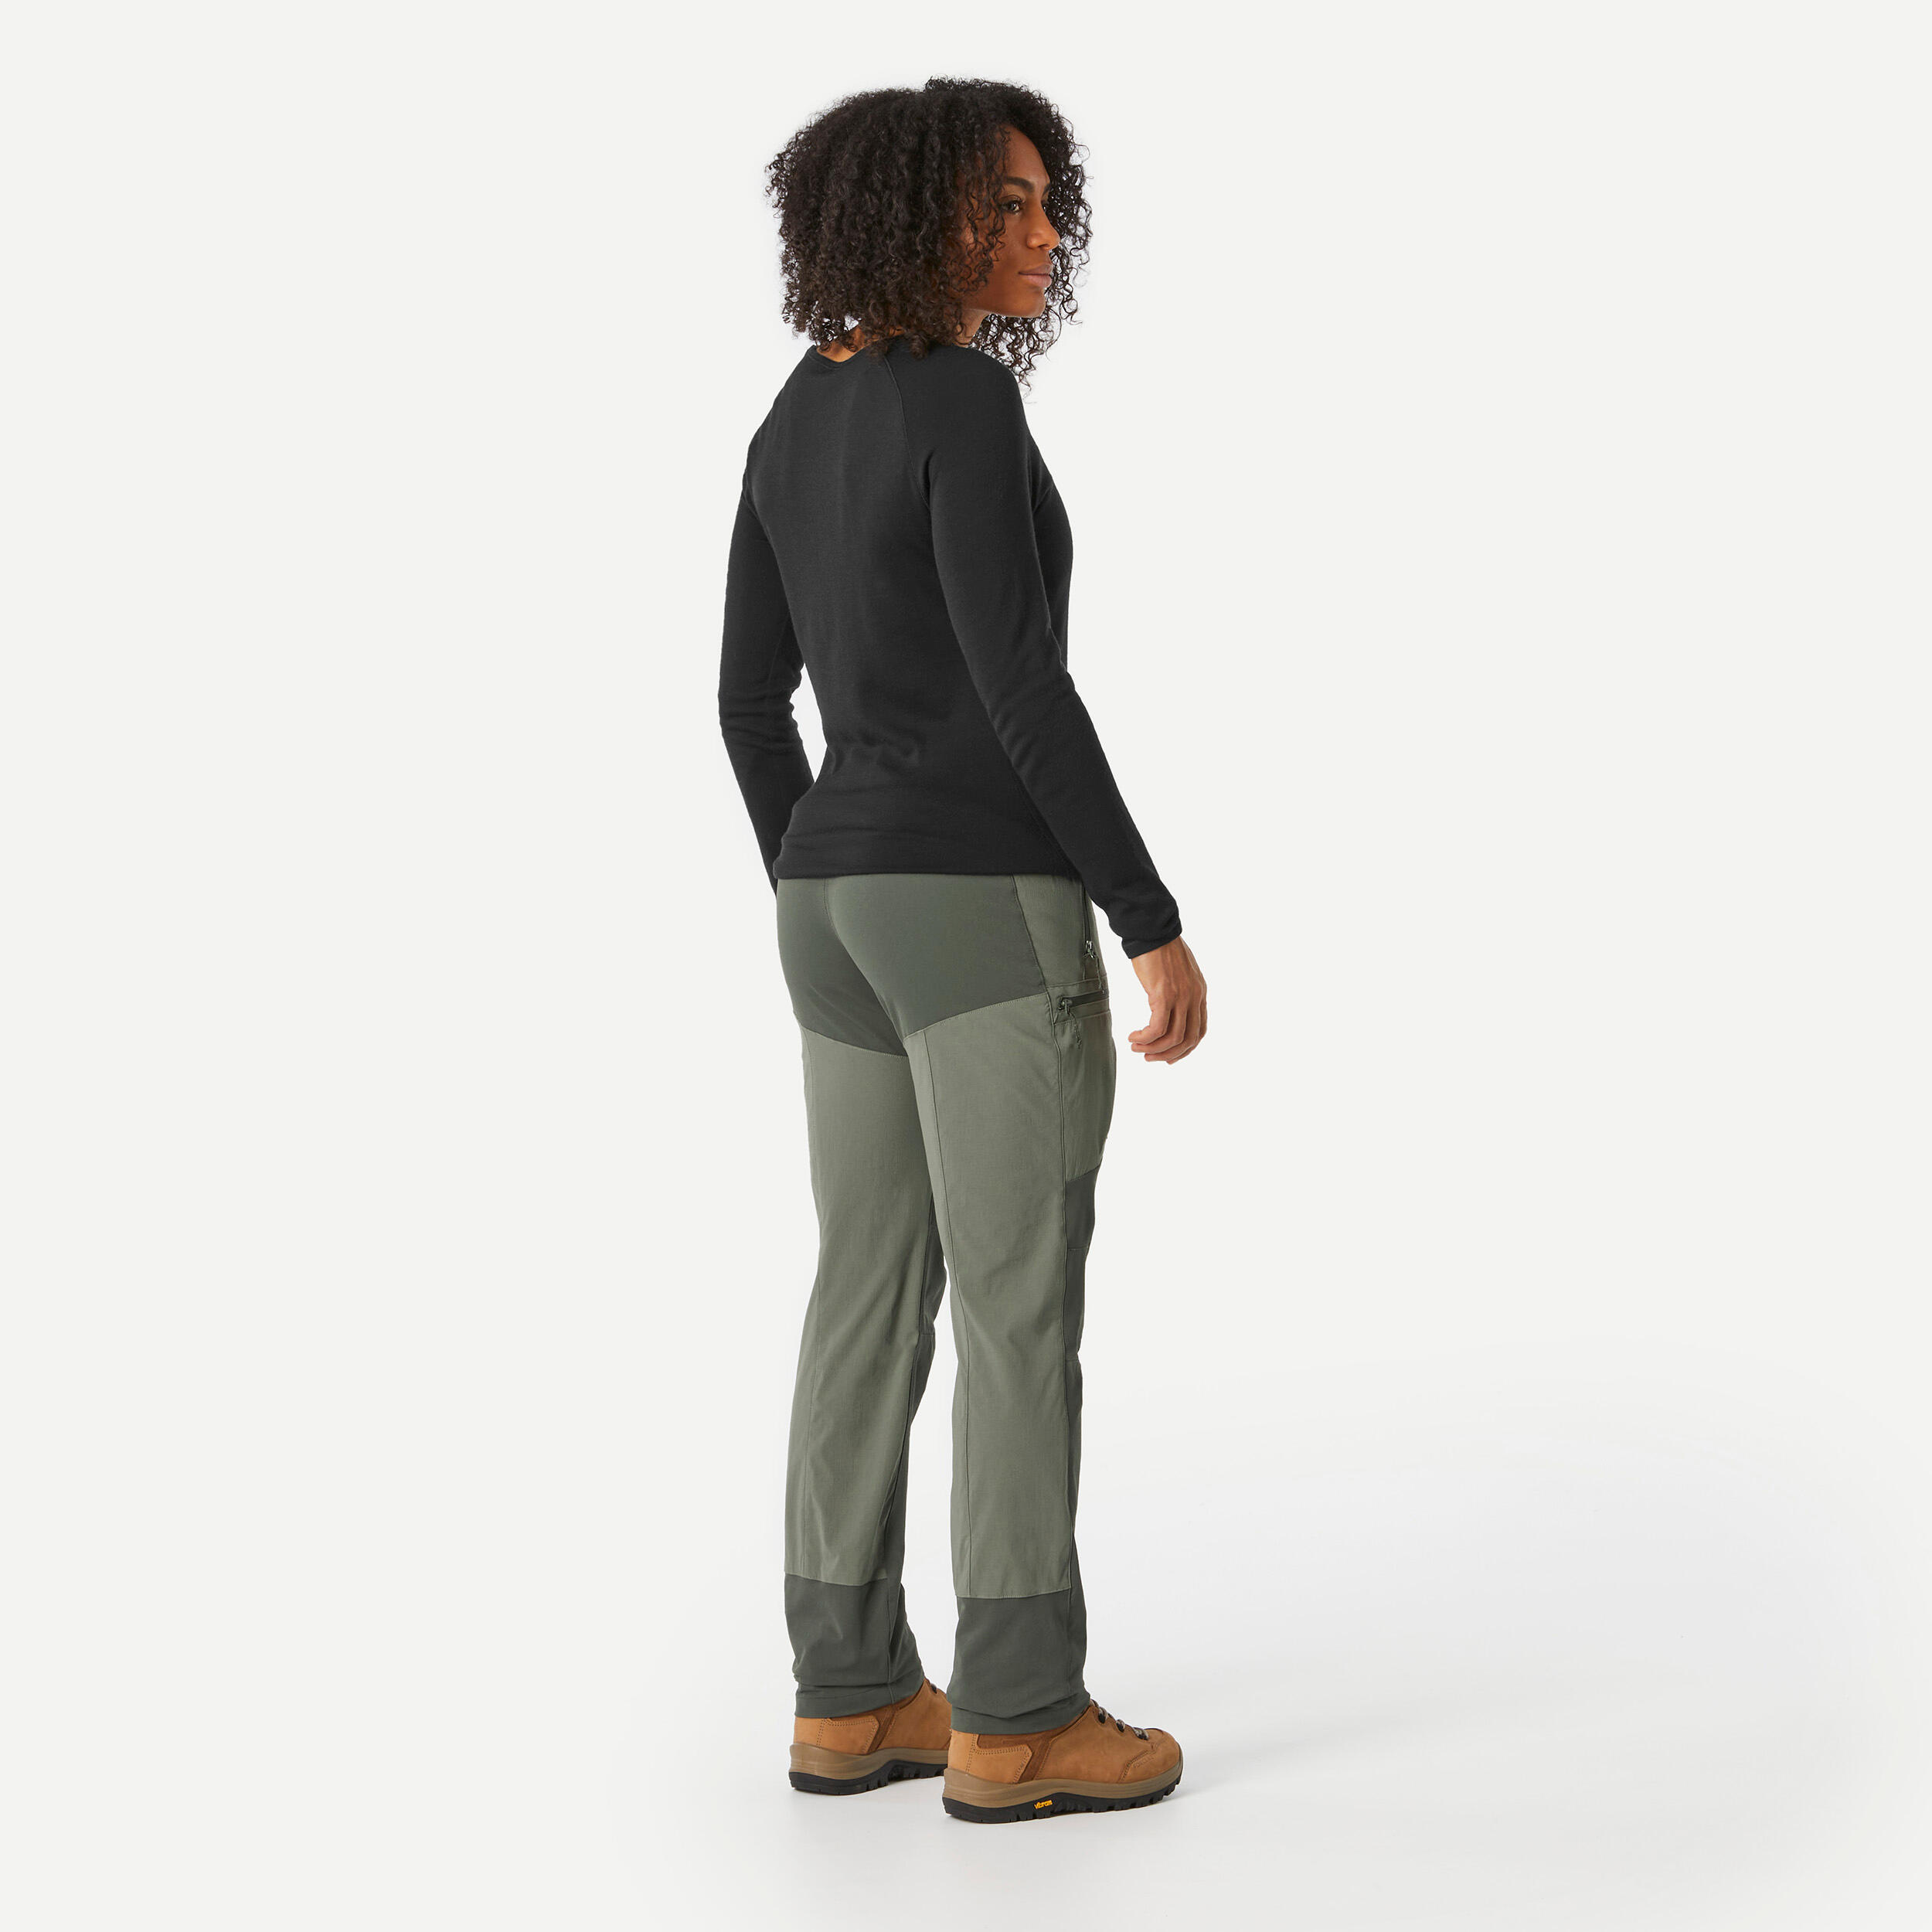 Women's Hiking Pants - MT 500 Khaki - Khaki brown, Black olive